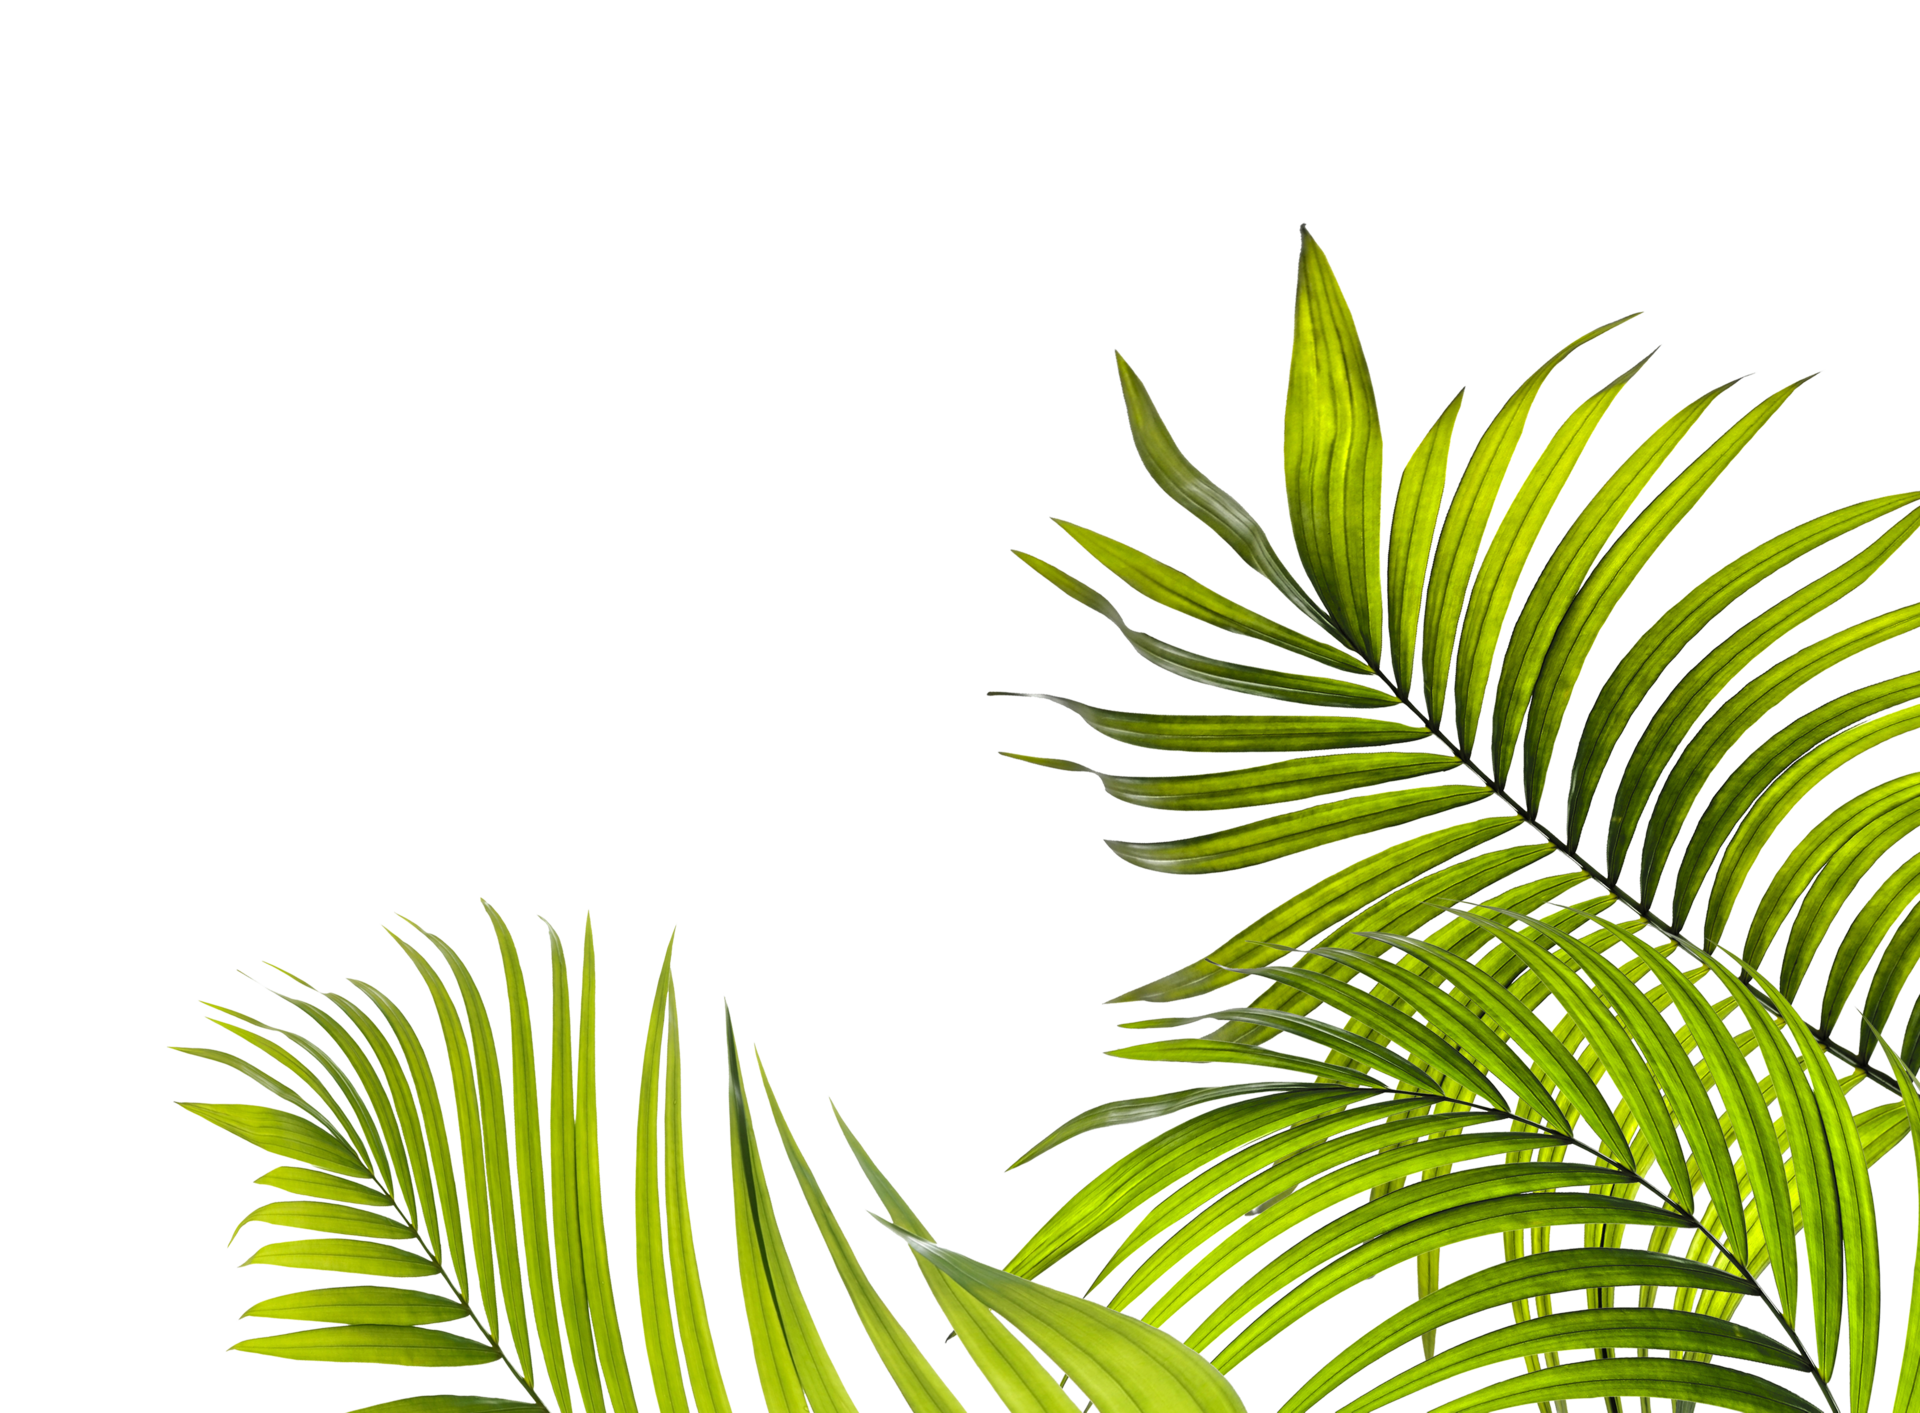 Lá cây cọ xanh lá cây PNG mang đến một hình ảnh tự nhiên và quyến rũ cho màn hình của bạn. Hình ảnh hùng vĩ của những cây cọ cao đang trổ bông sẽ giúp bạn đưa tâm trạng vào một không gian yên bình và tươi mới. Hãy nhấp chuột để trải nghiệm sự đẹp của chúng.